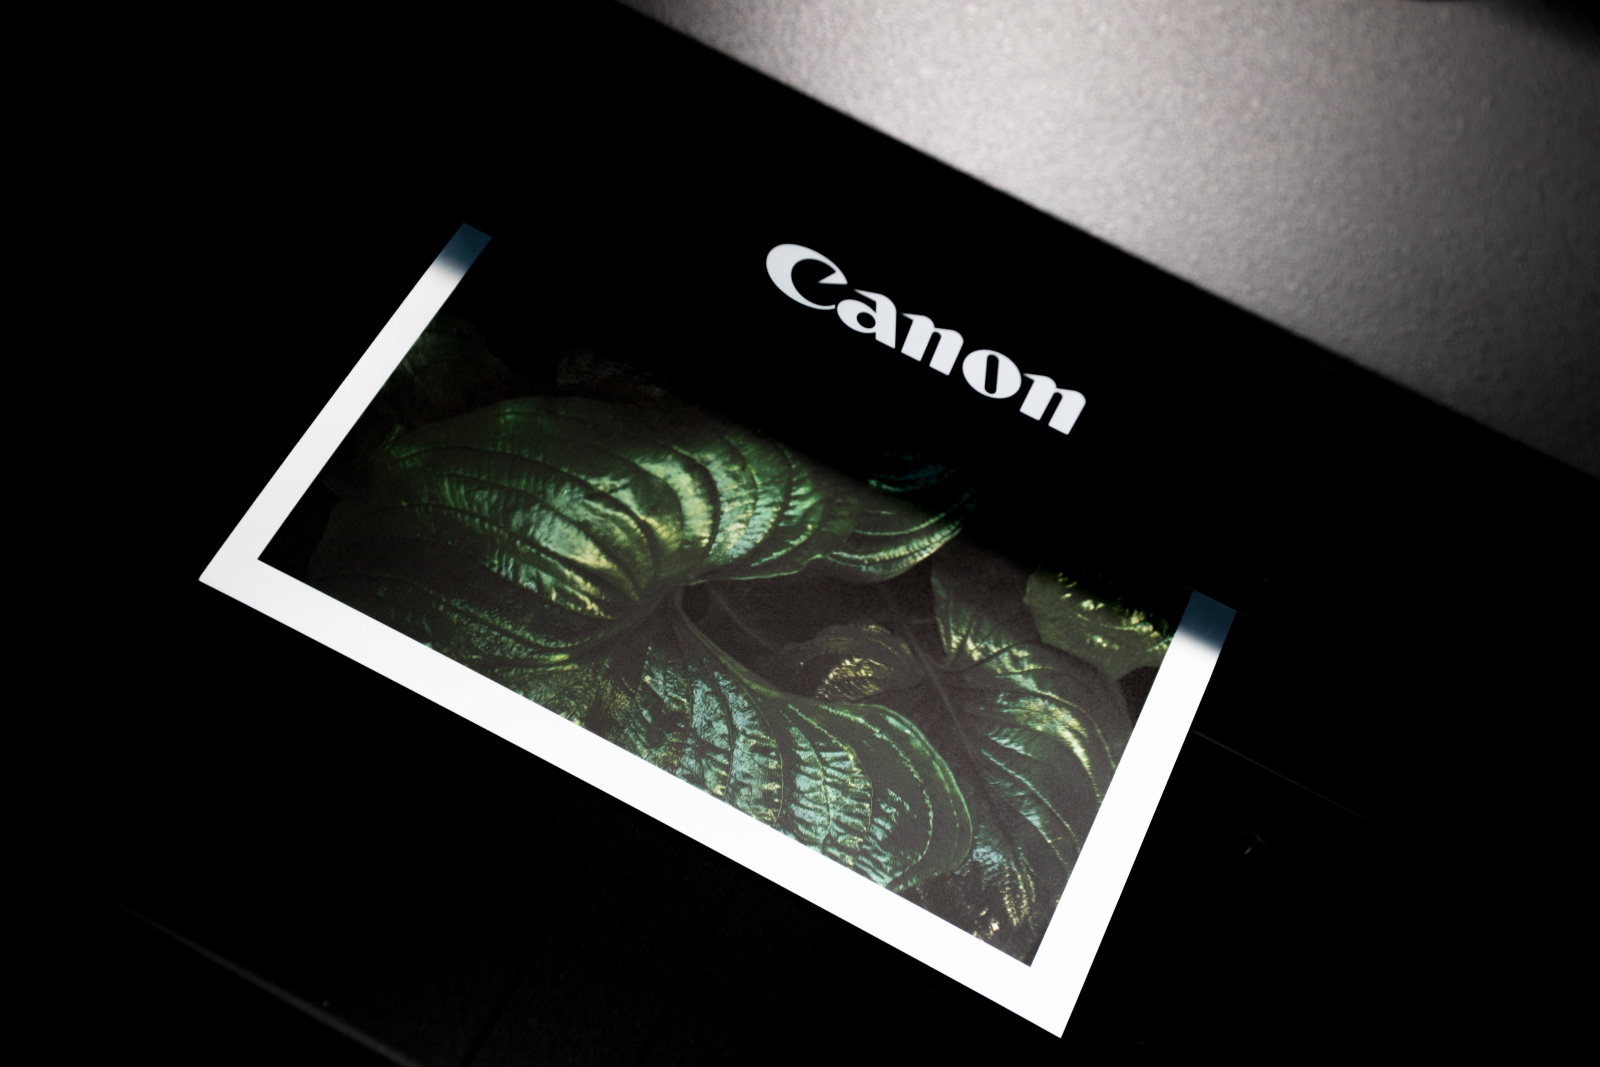 Imprimarea unei imagini pe o imprimantă Canon